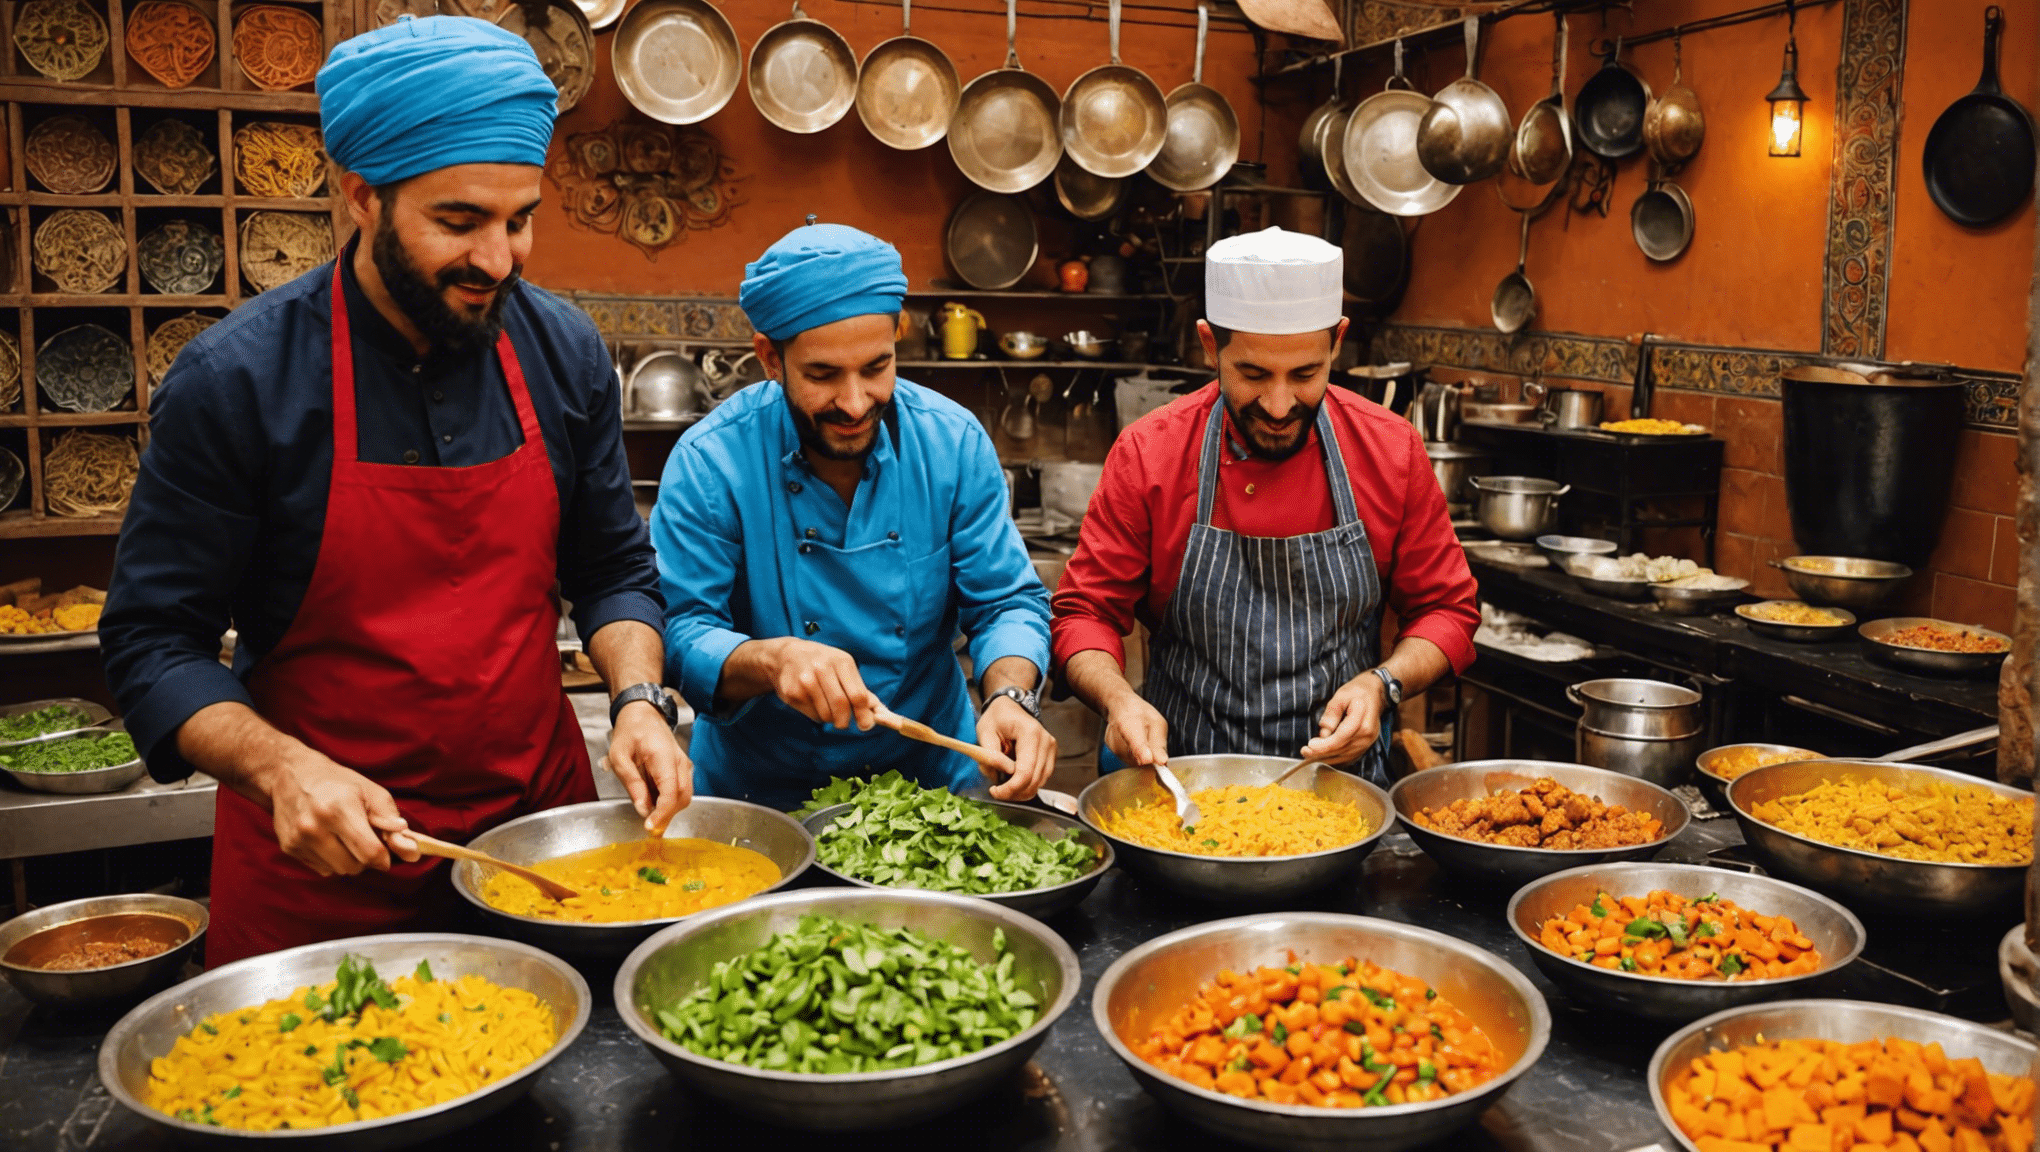 Erleben Sie den ultimativen Feinschmeckertraum mit Kochkursen in Marrakesch, wo traditionelle Rezepte, exotische Gewürze und lebhafte Märkte zusammenkommen und ein einzigartiges kulinarisches Abenteuer bieten.